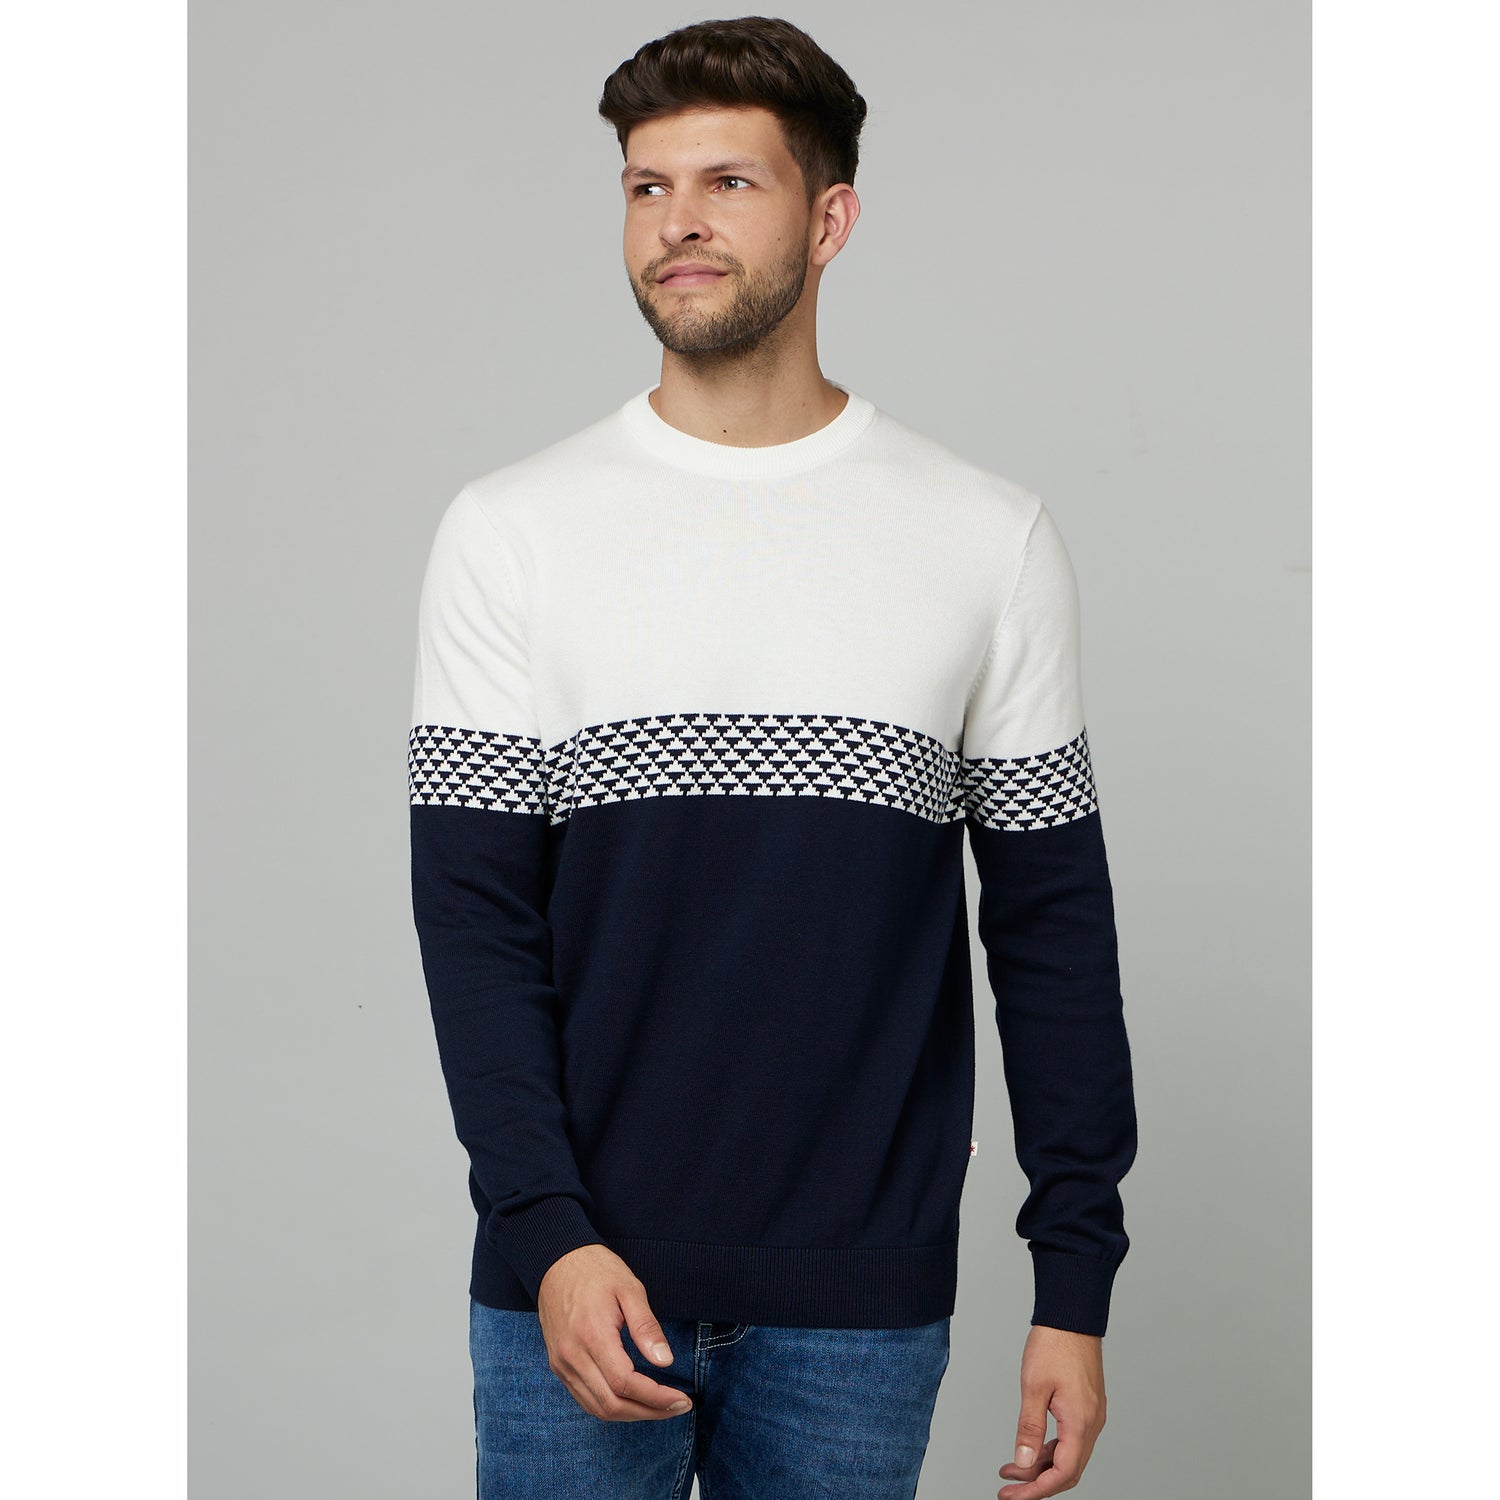 Black Colourblocked Cotton Pullover Sweater (FEJAQ)